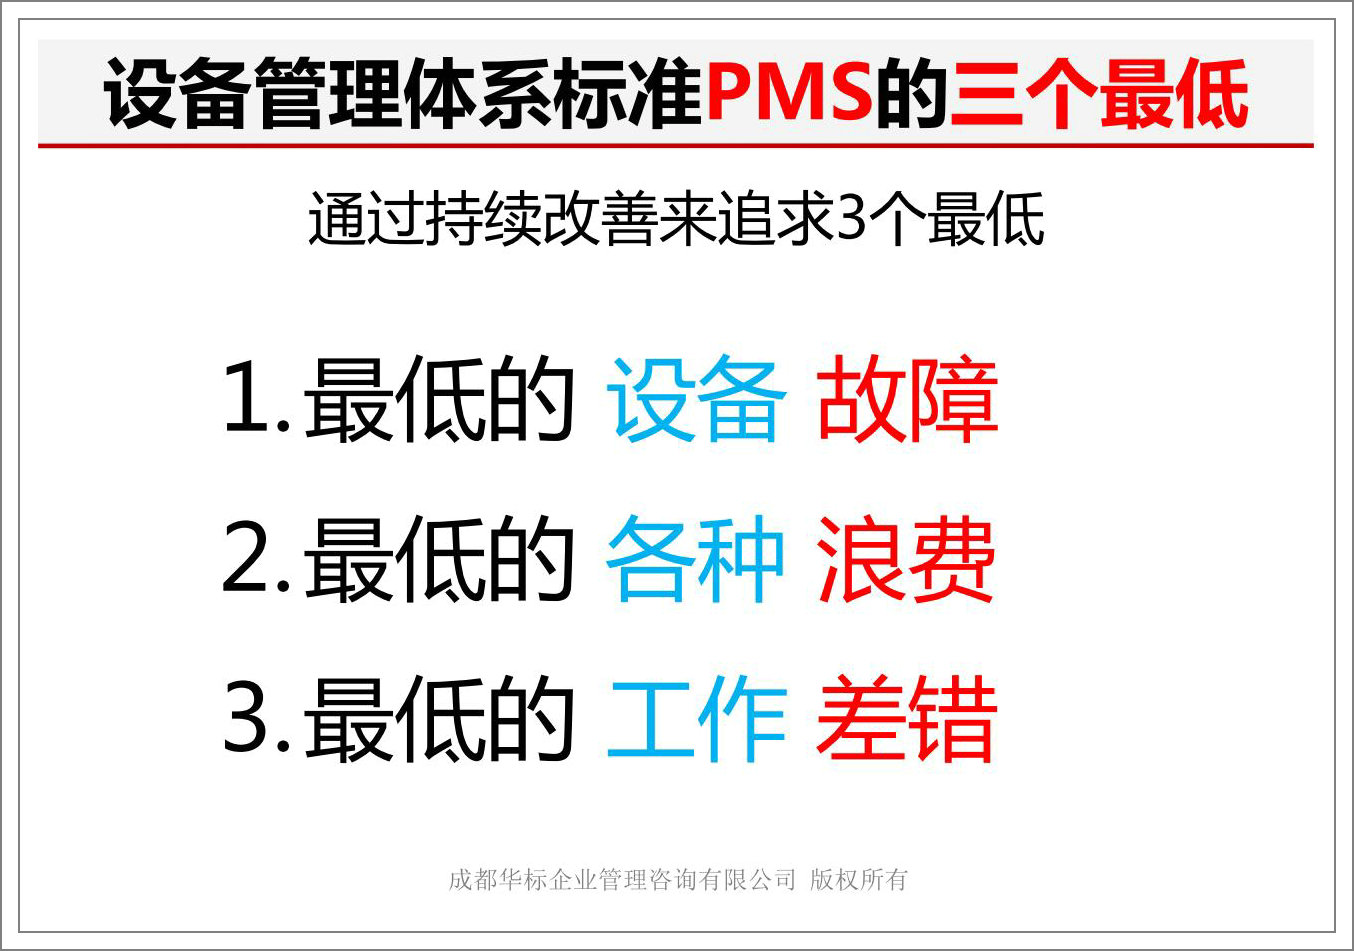 设备管理体系标准PMS的三个最低.jpg